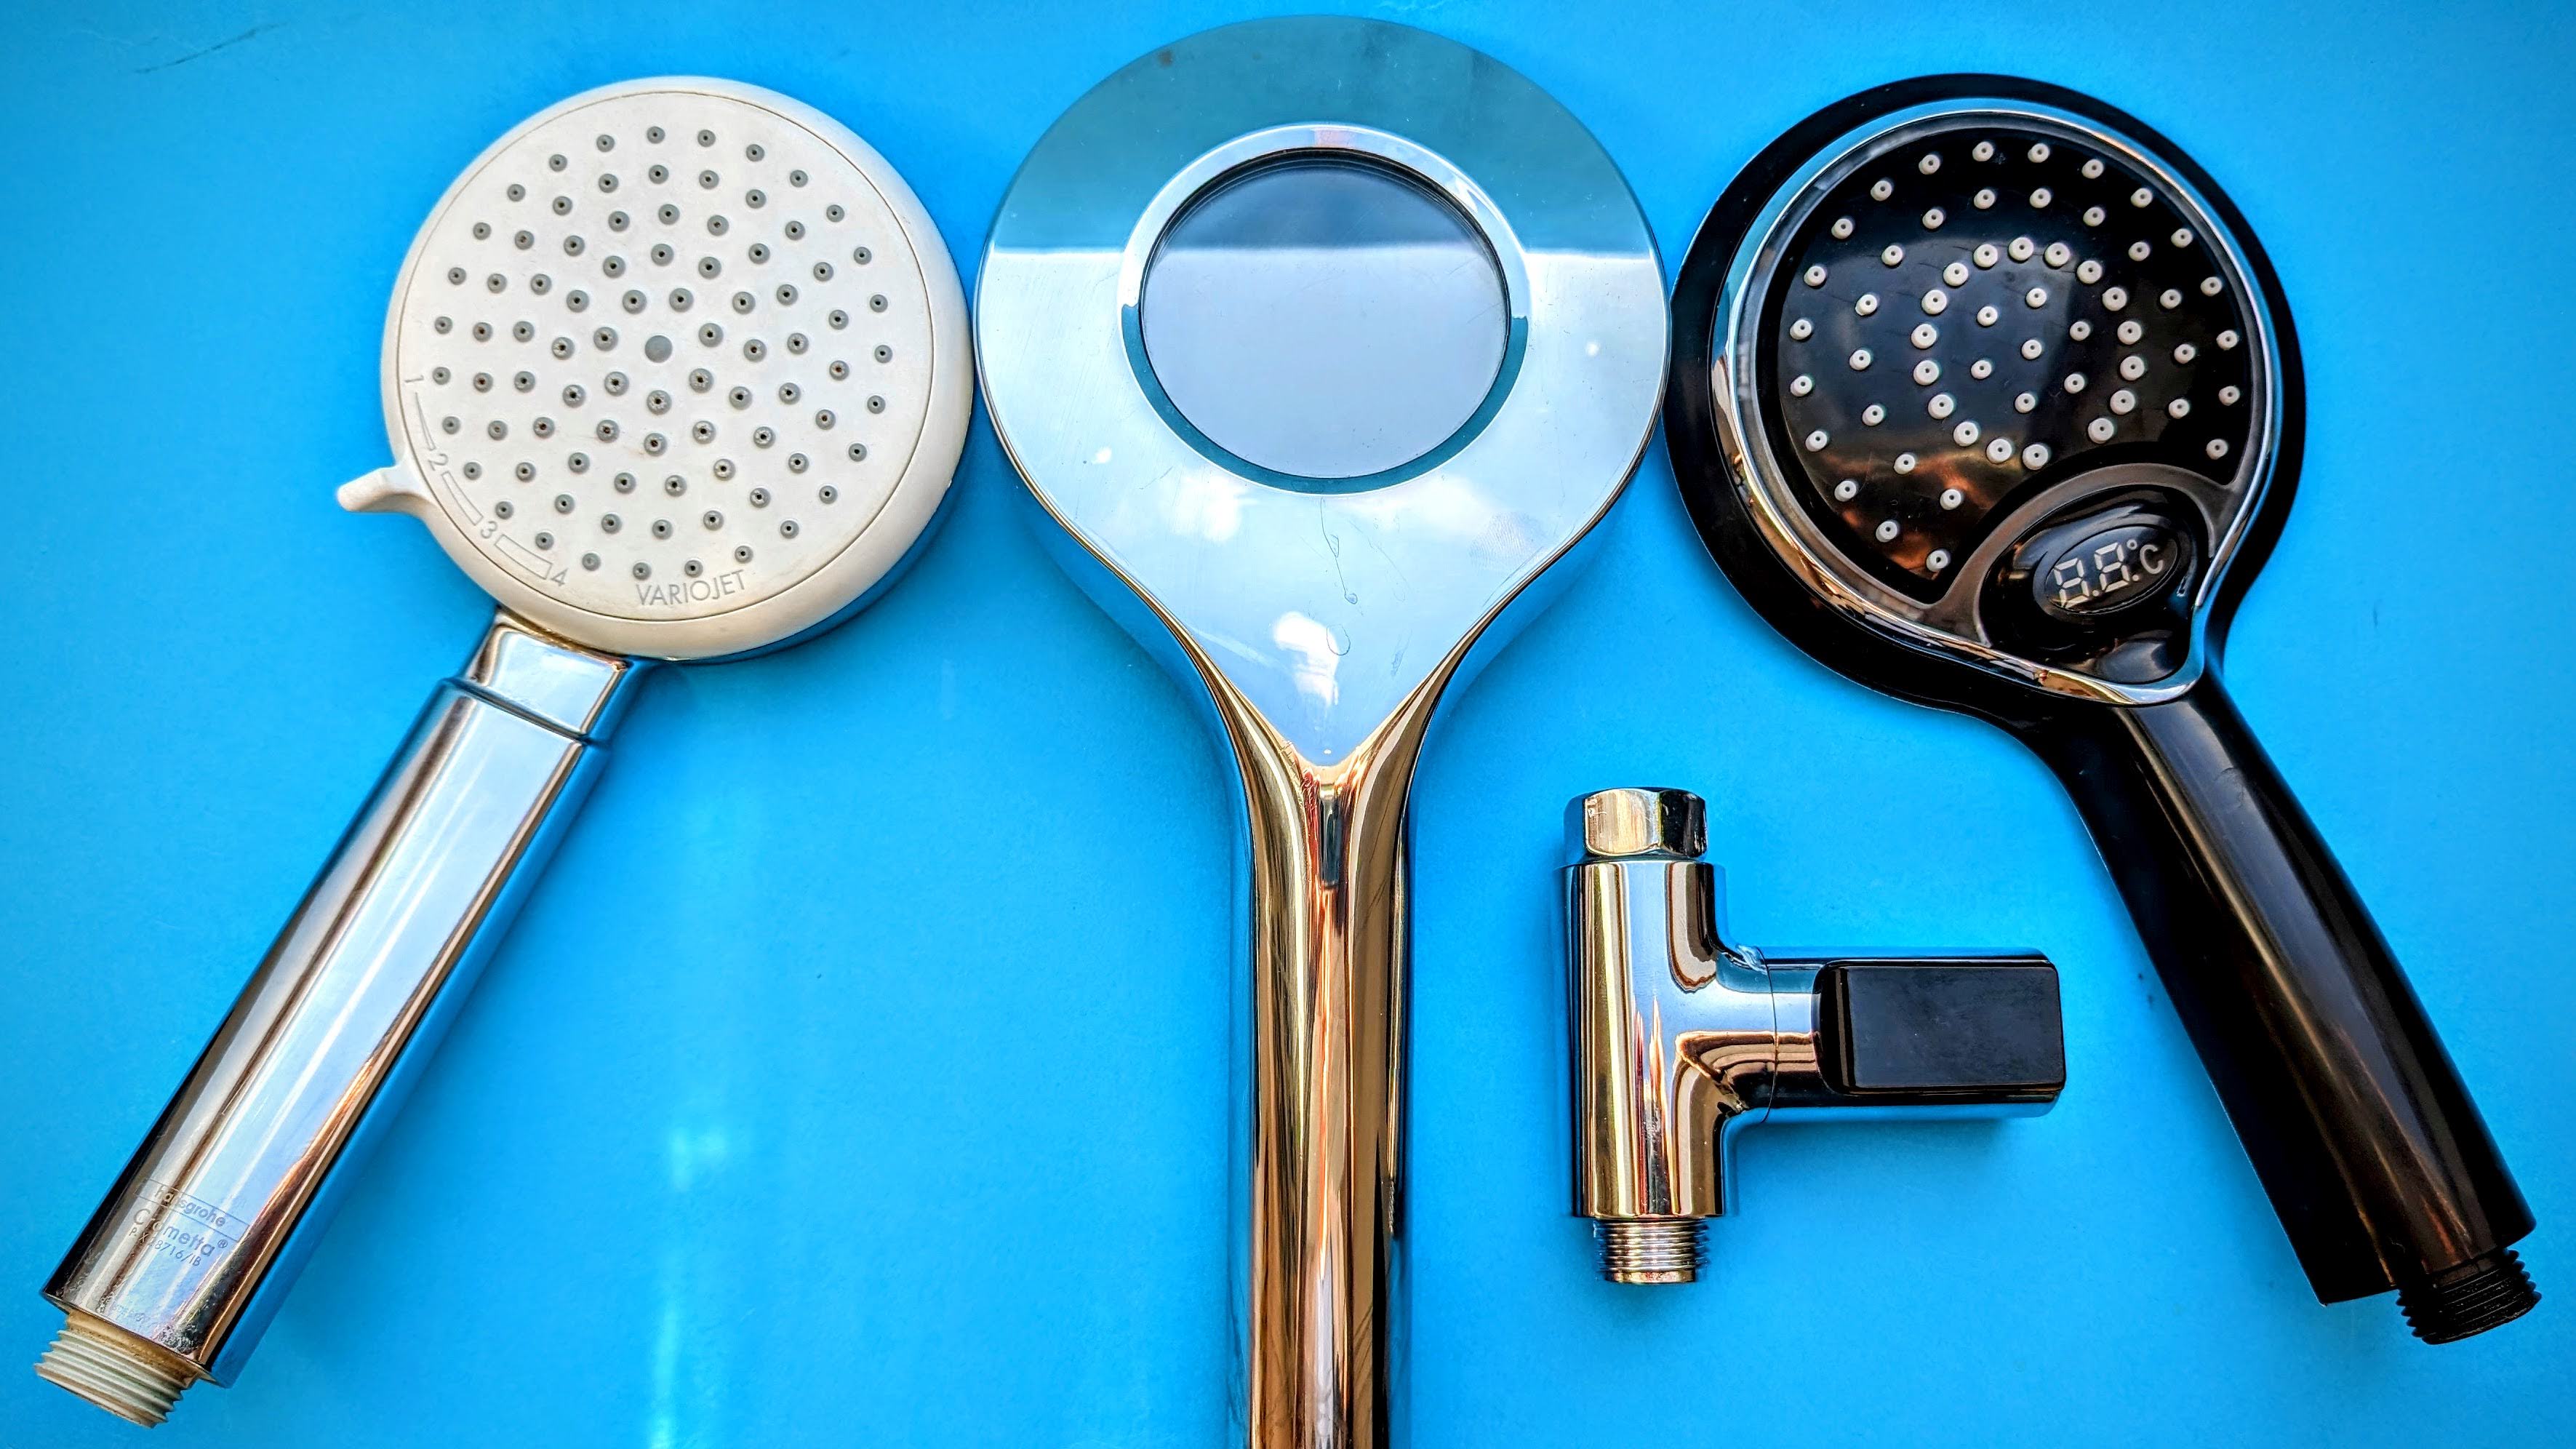 Völlig abgedreht und nachhaltig: Energie sparen beim Duschen mit smarten Gadgets